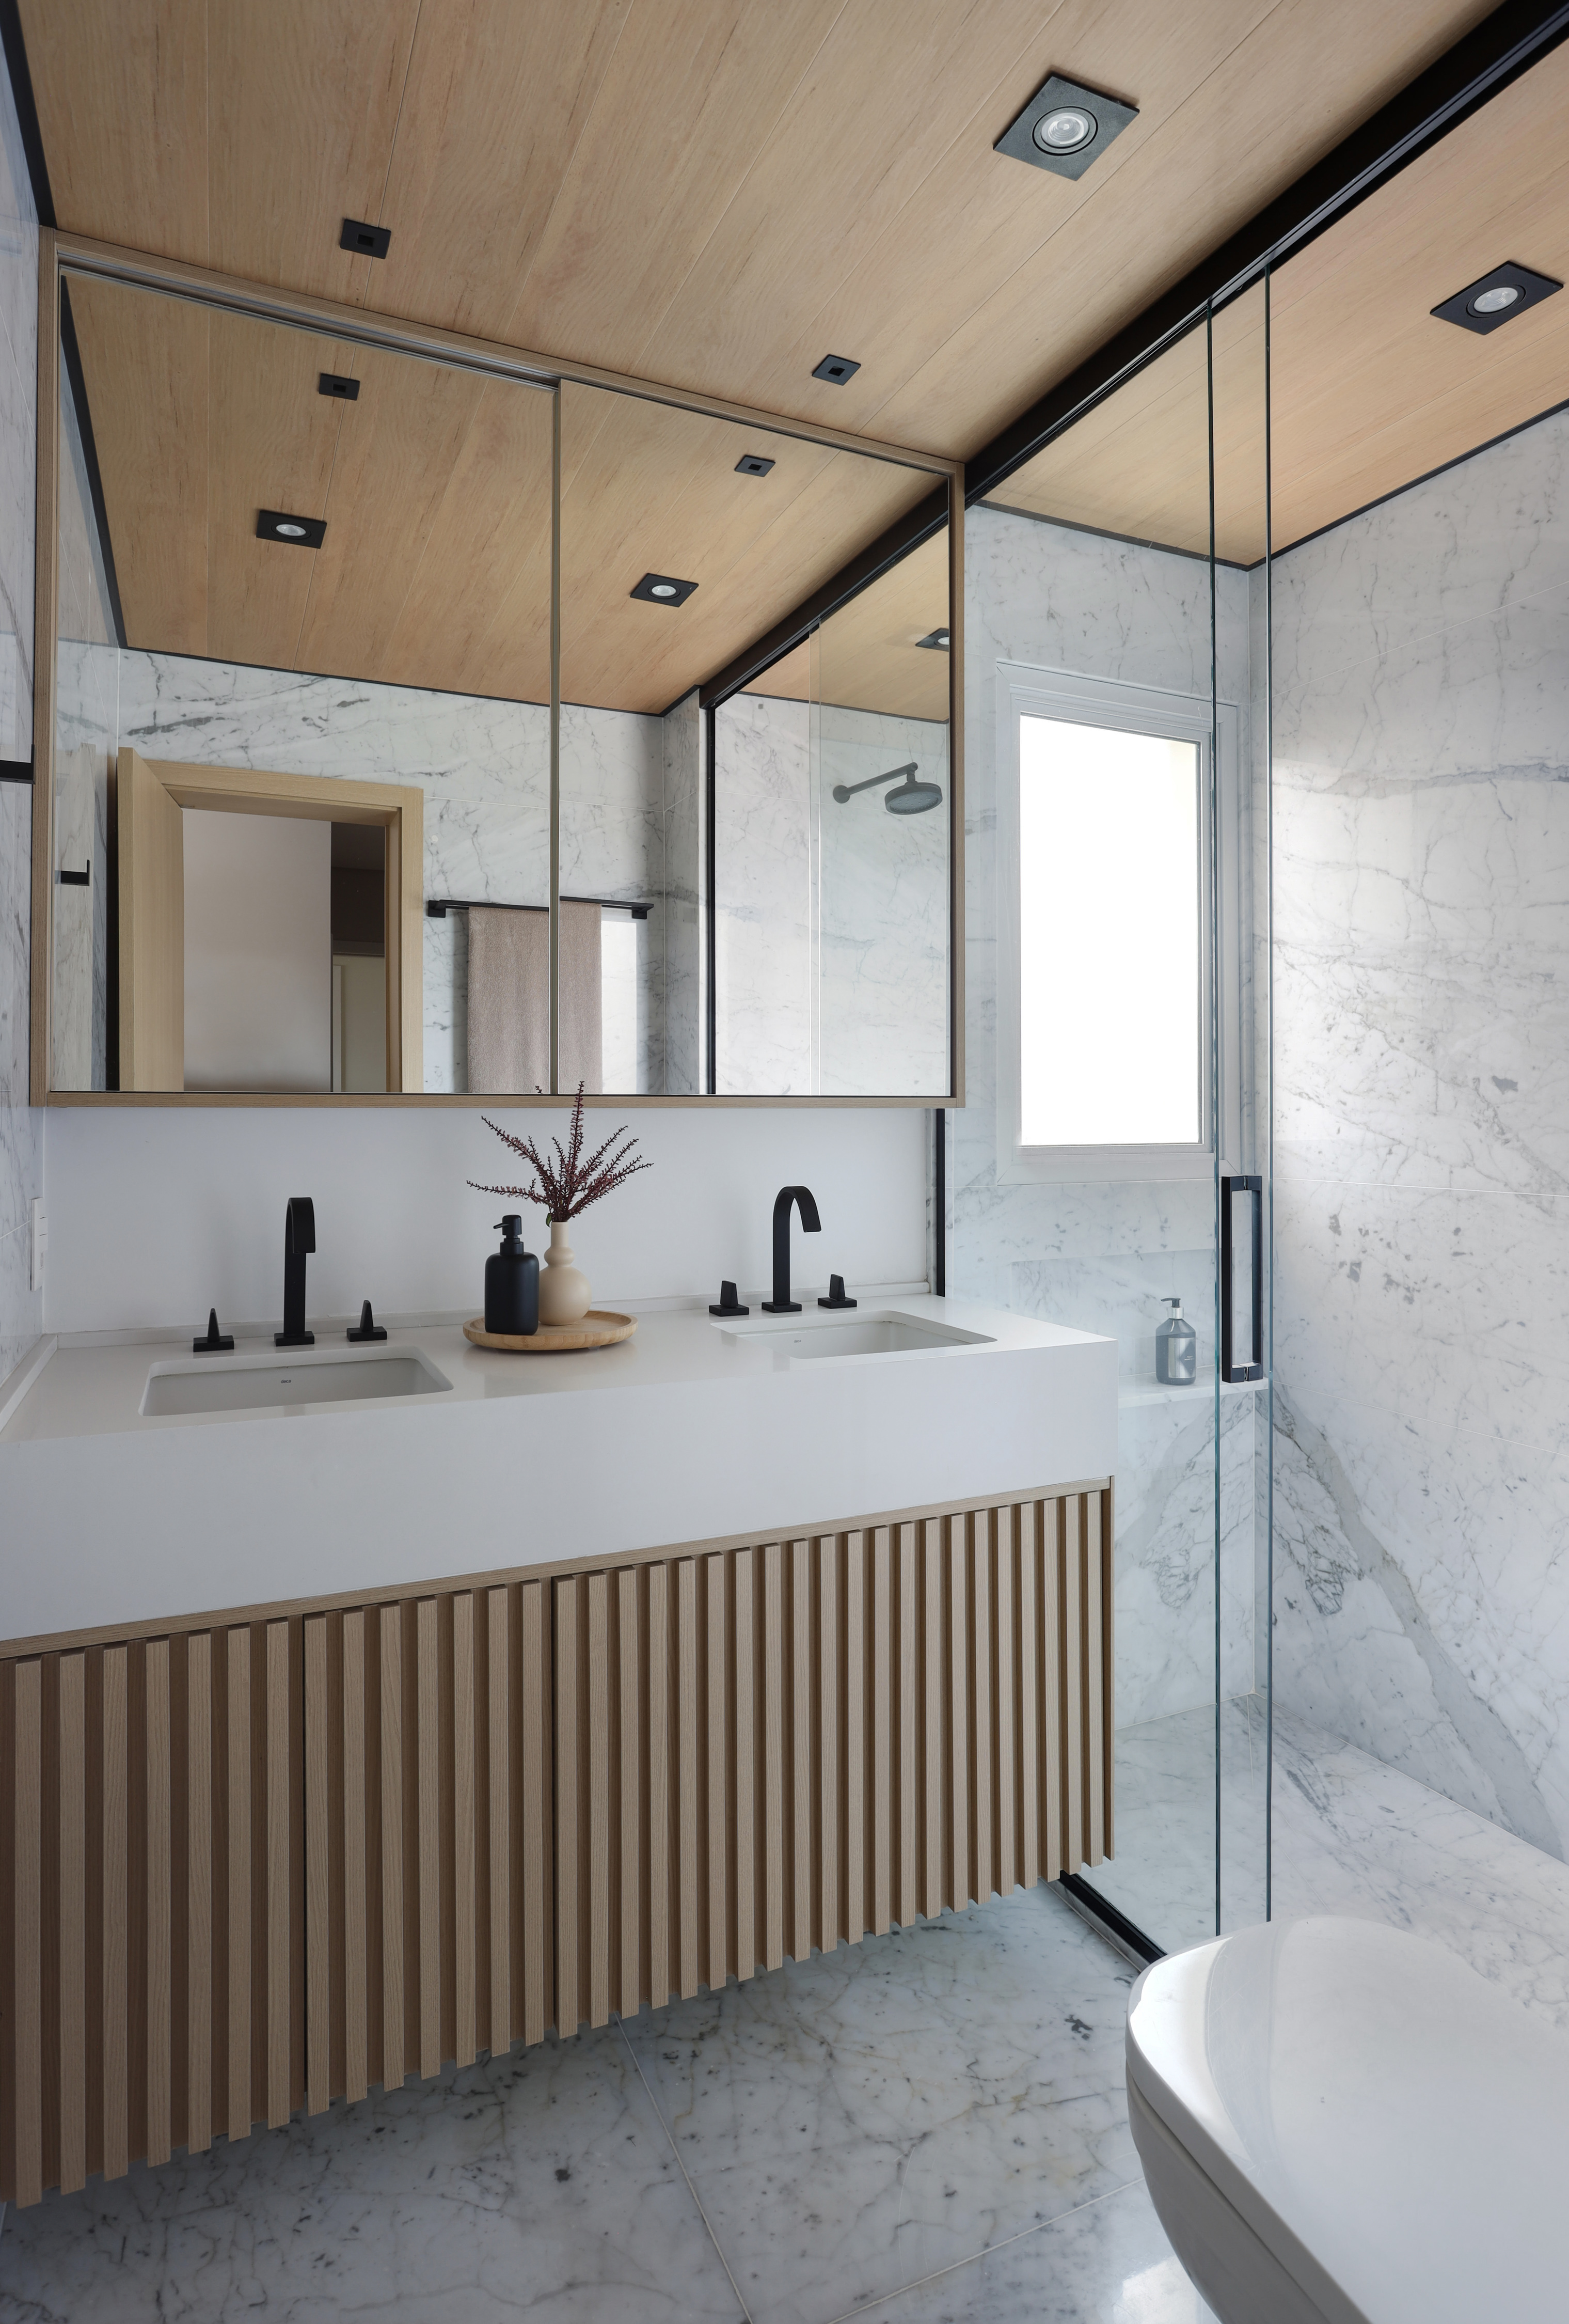 Wabi-sabi décor apartamento 126 m² Barbara Dundes decoração ape cores neutras banheiro ripado madeira espelho